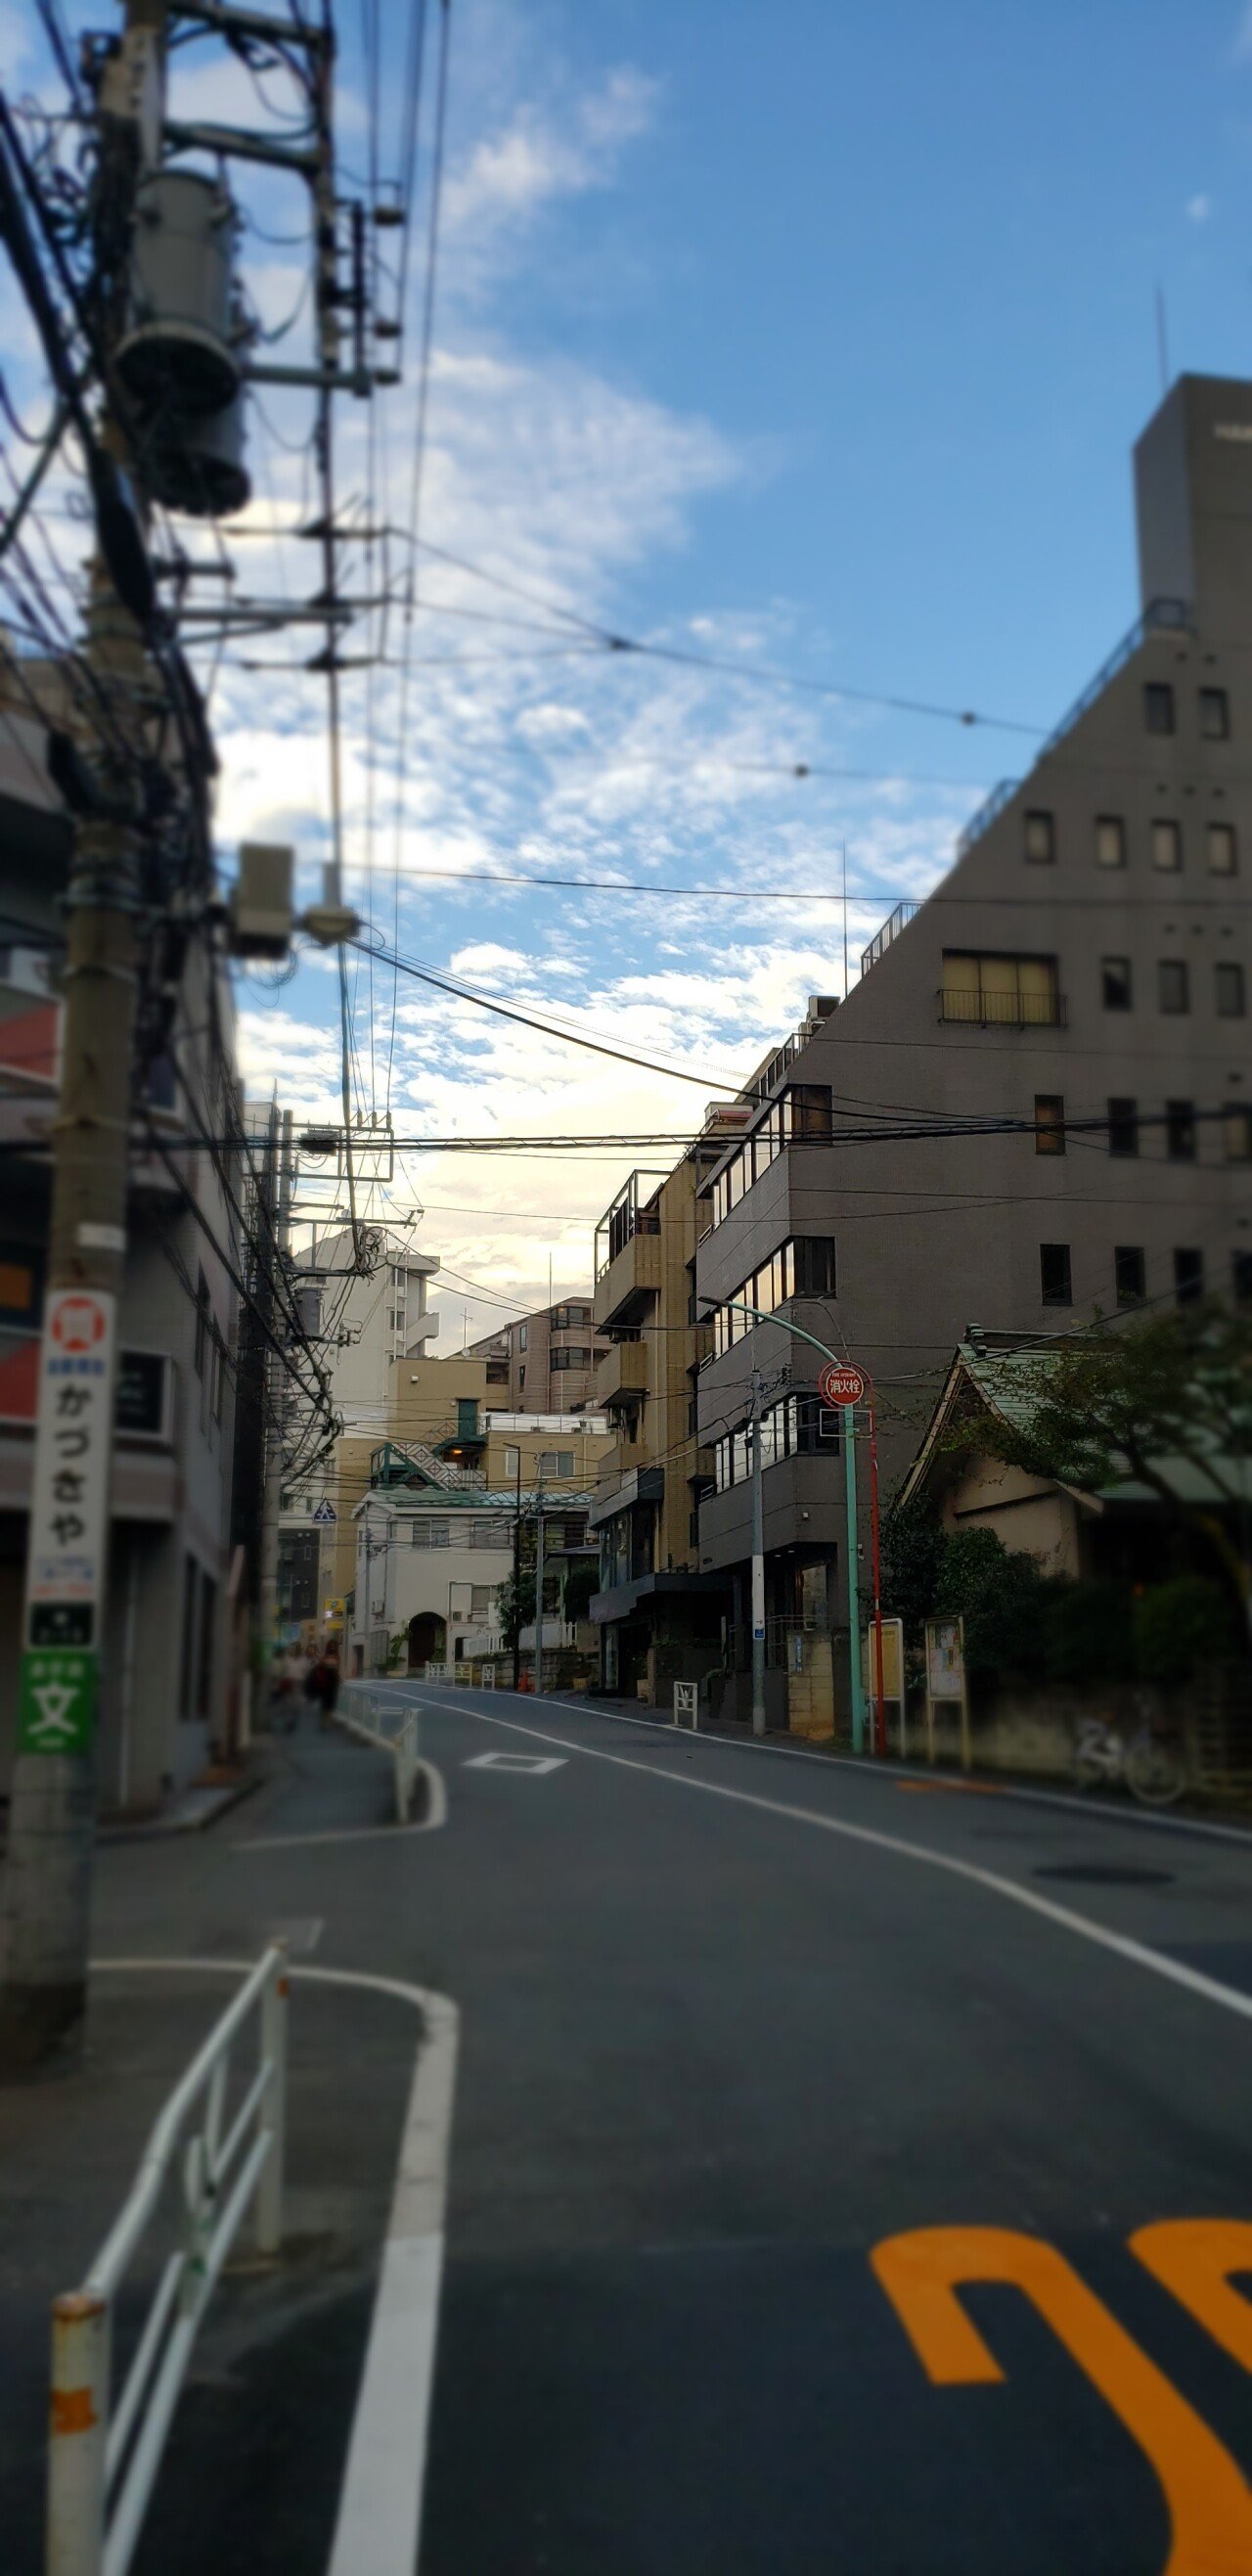 20201107_152953.jpg 너무나도 예쁜 요즘 도쿄 하늘..jpg